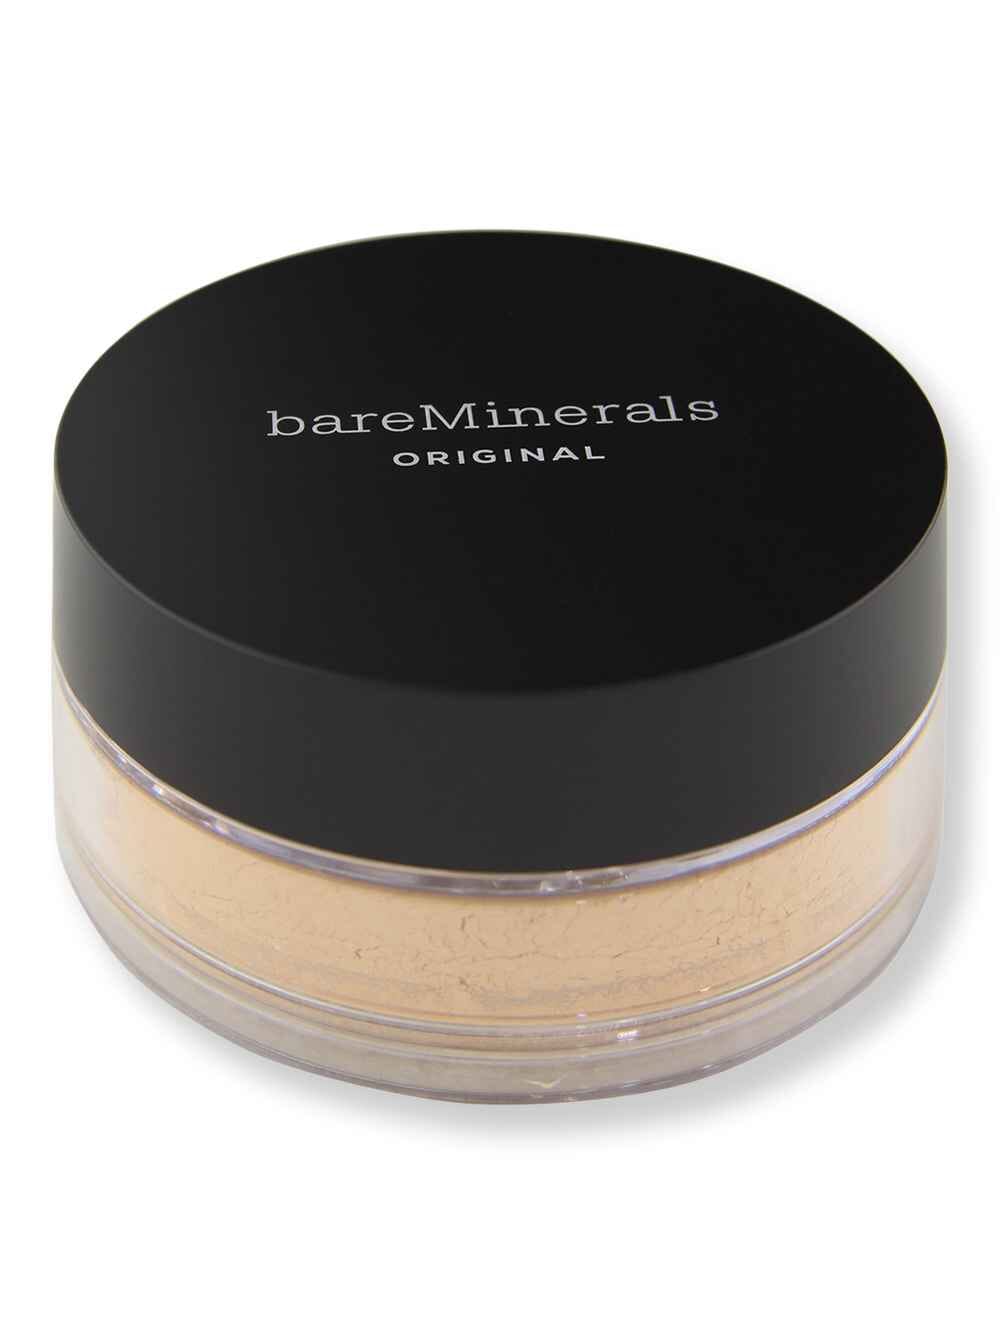 Bareminerals Bareminerals Original Loose Powder Foundation SPF 15 Golden Beige 13 0.28 oz8 g Tinted Moisturizers & Foundations 